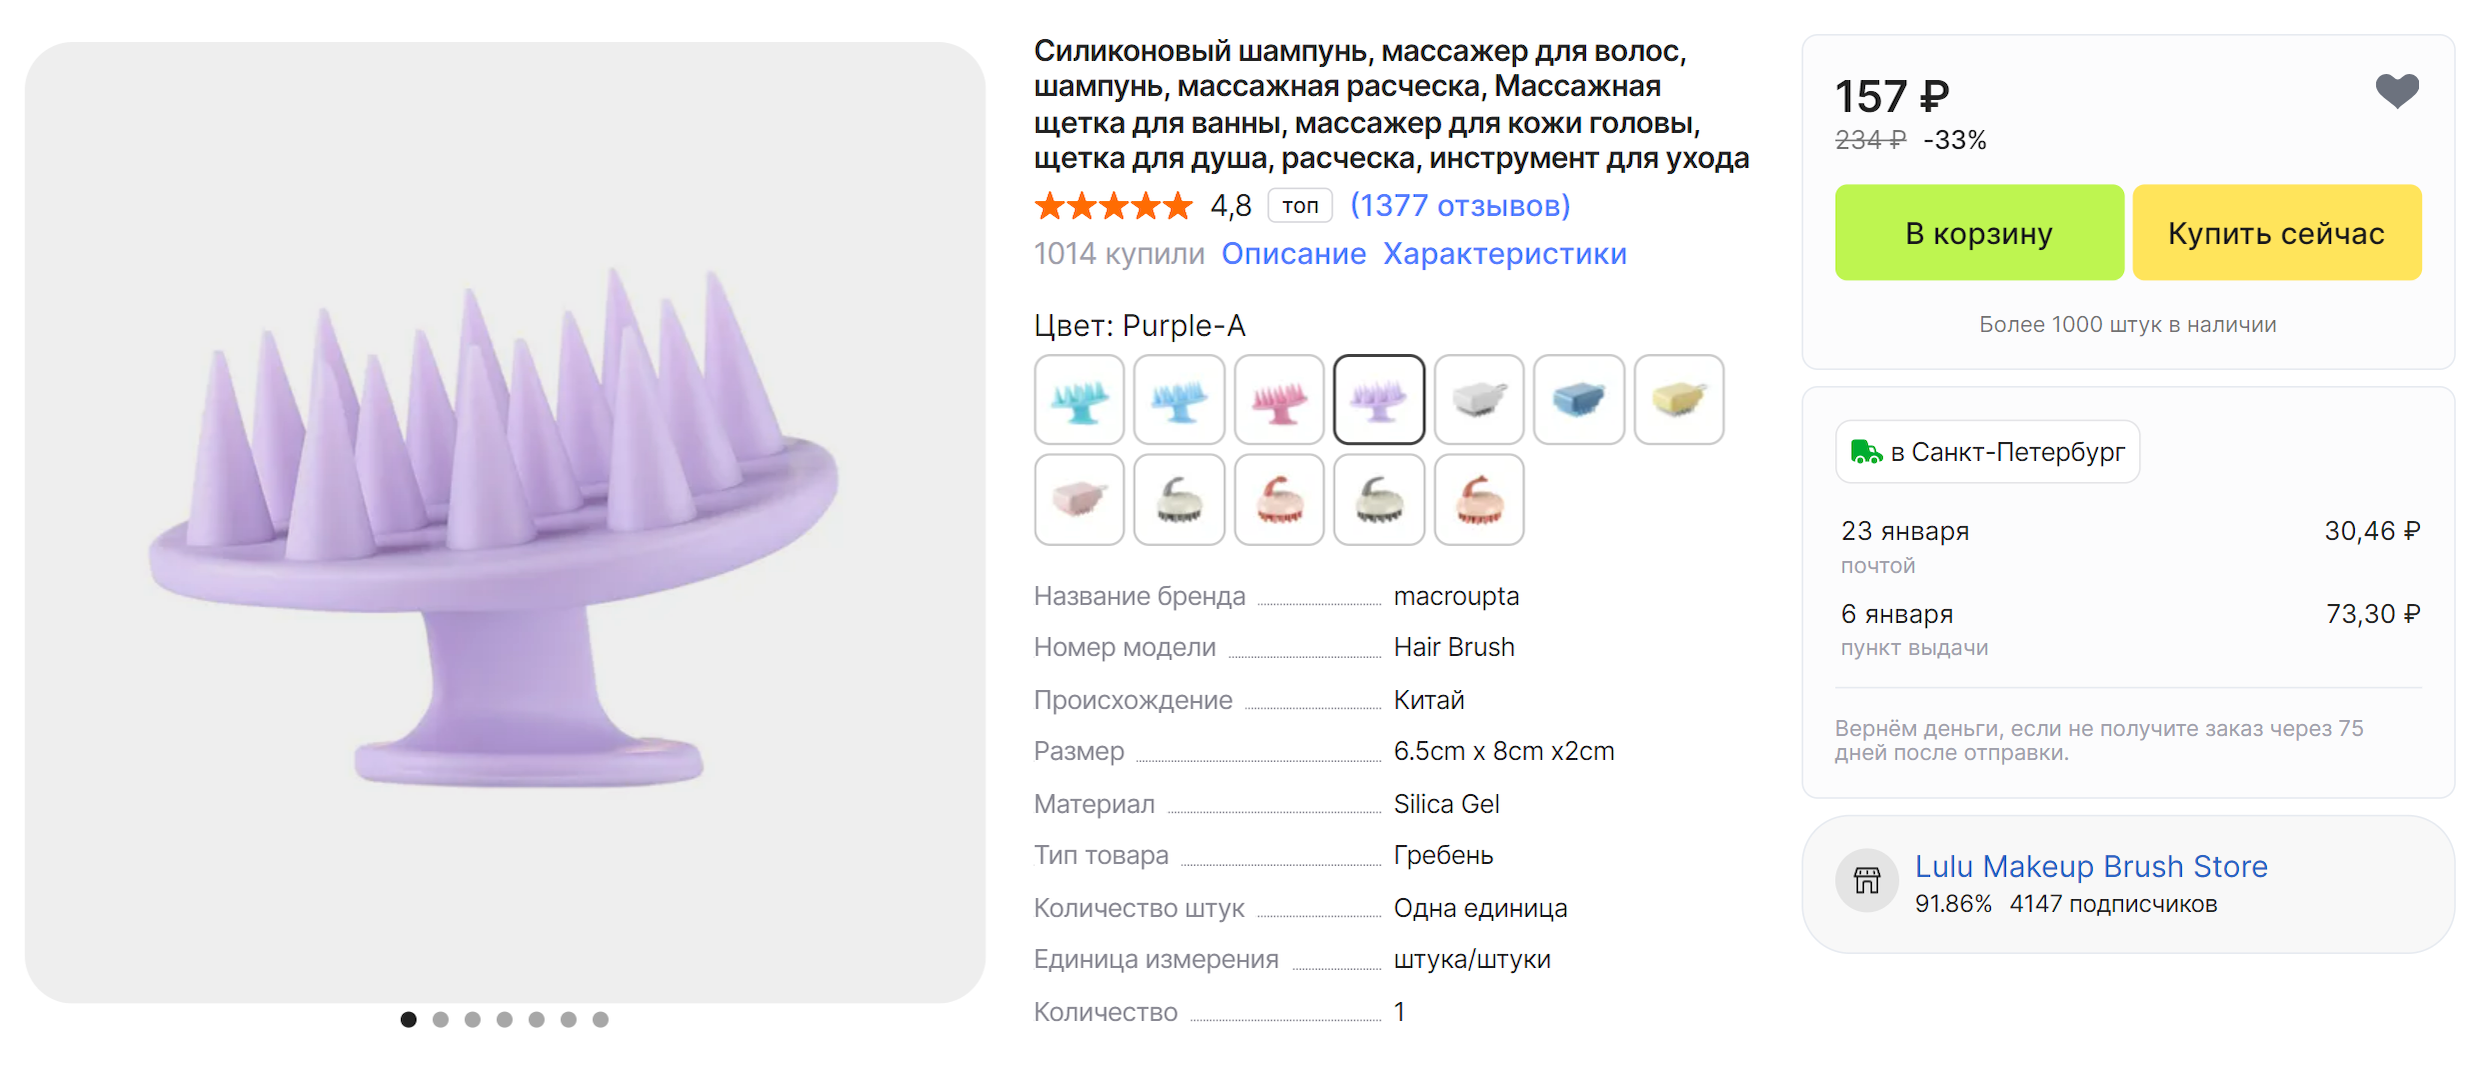 Для лучшего промывания кожи головы некоторые используют специальные массажеры. На «Алиэкспрессе» такие можно купить за 157 ₽. Источник: aliexpress.ru